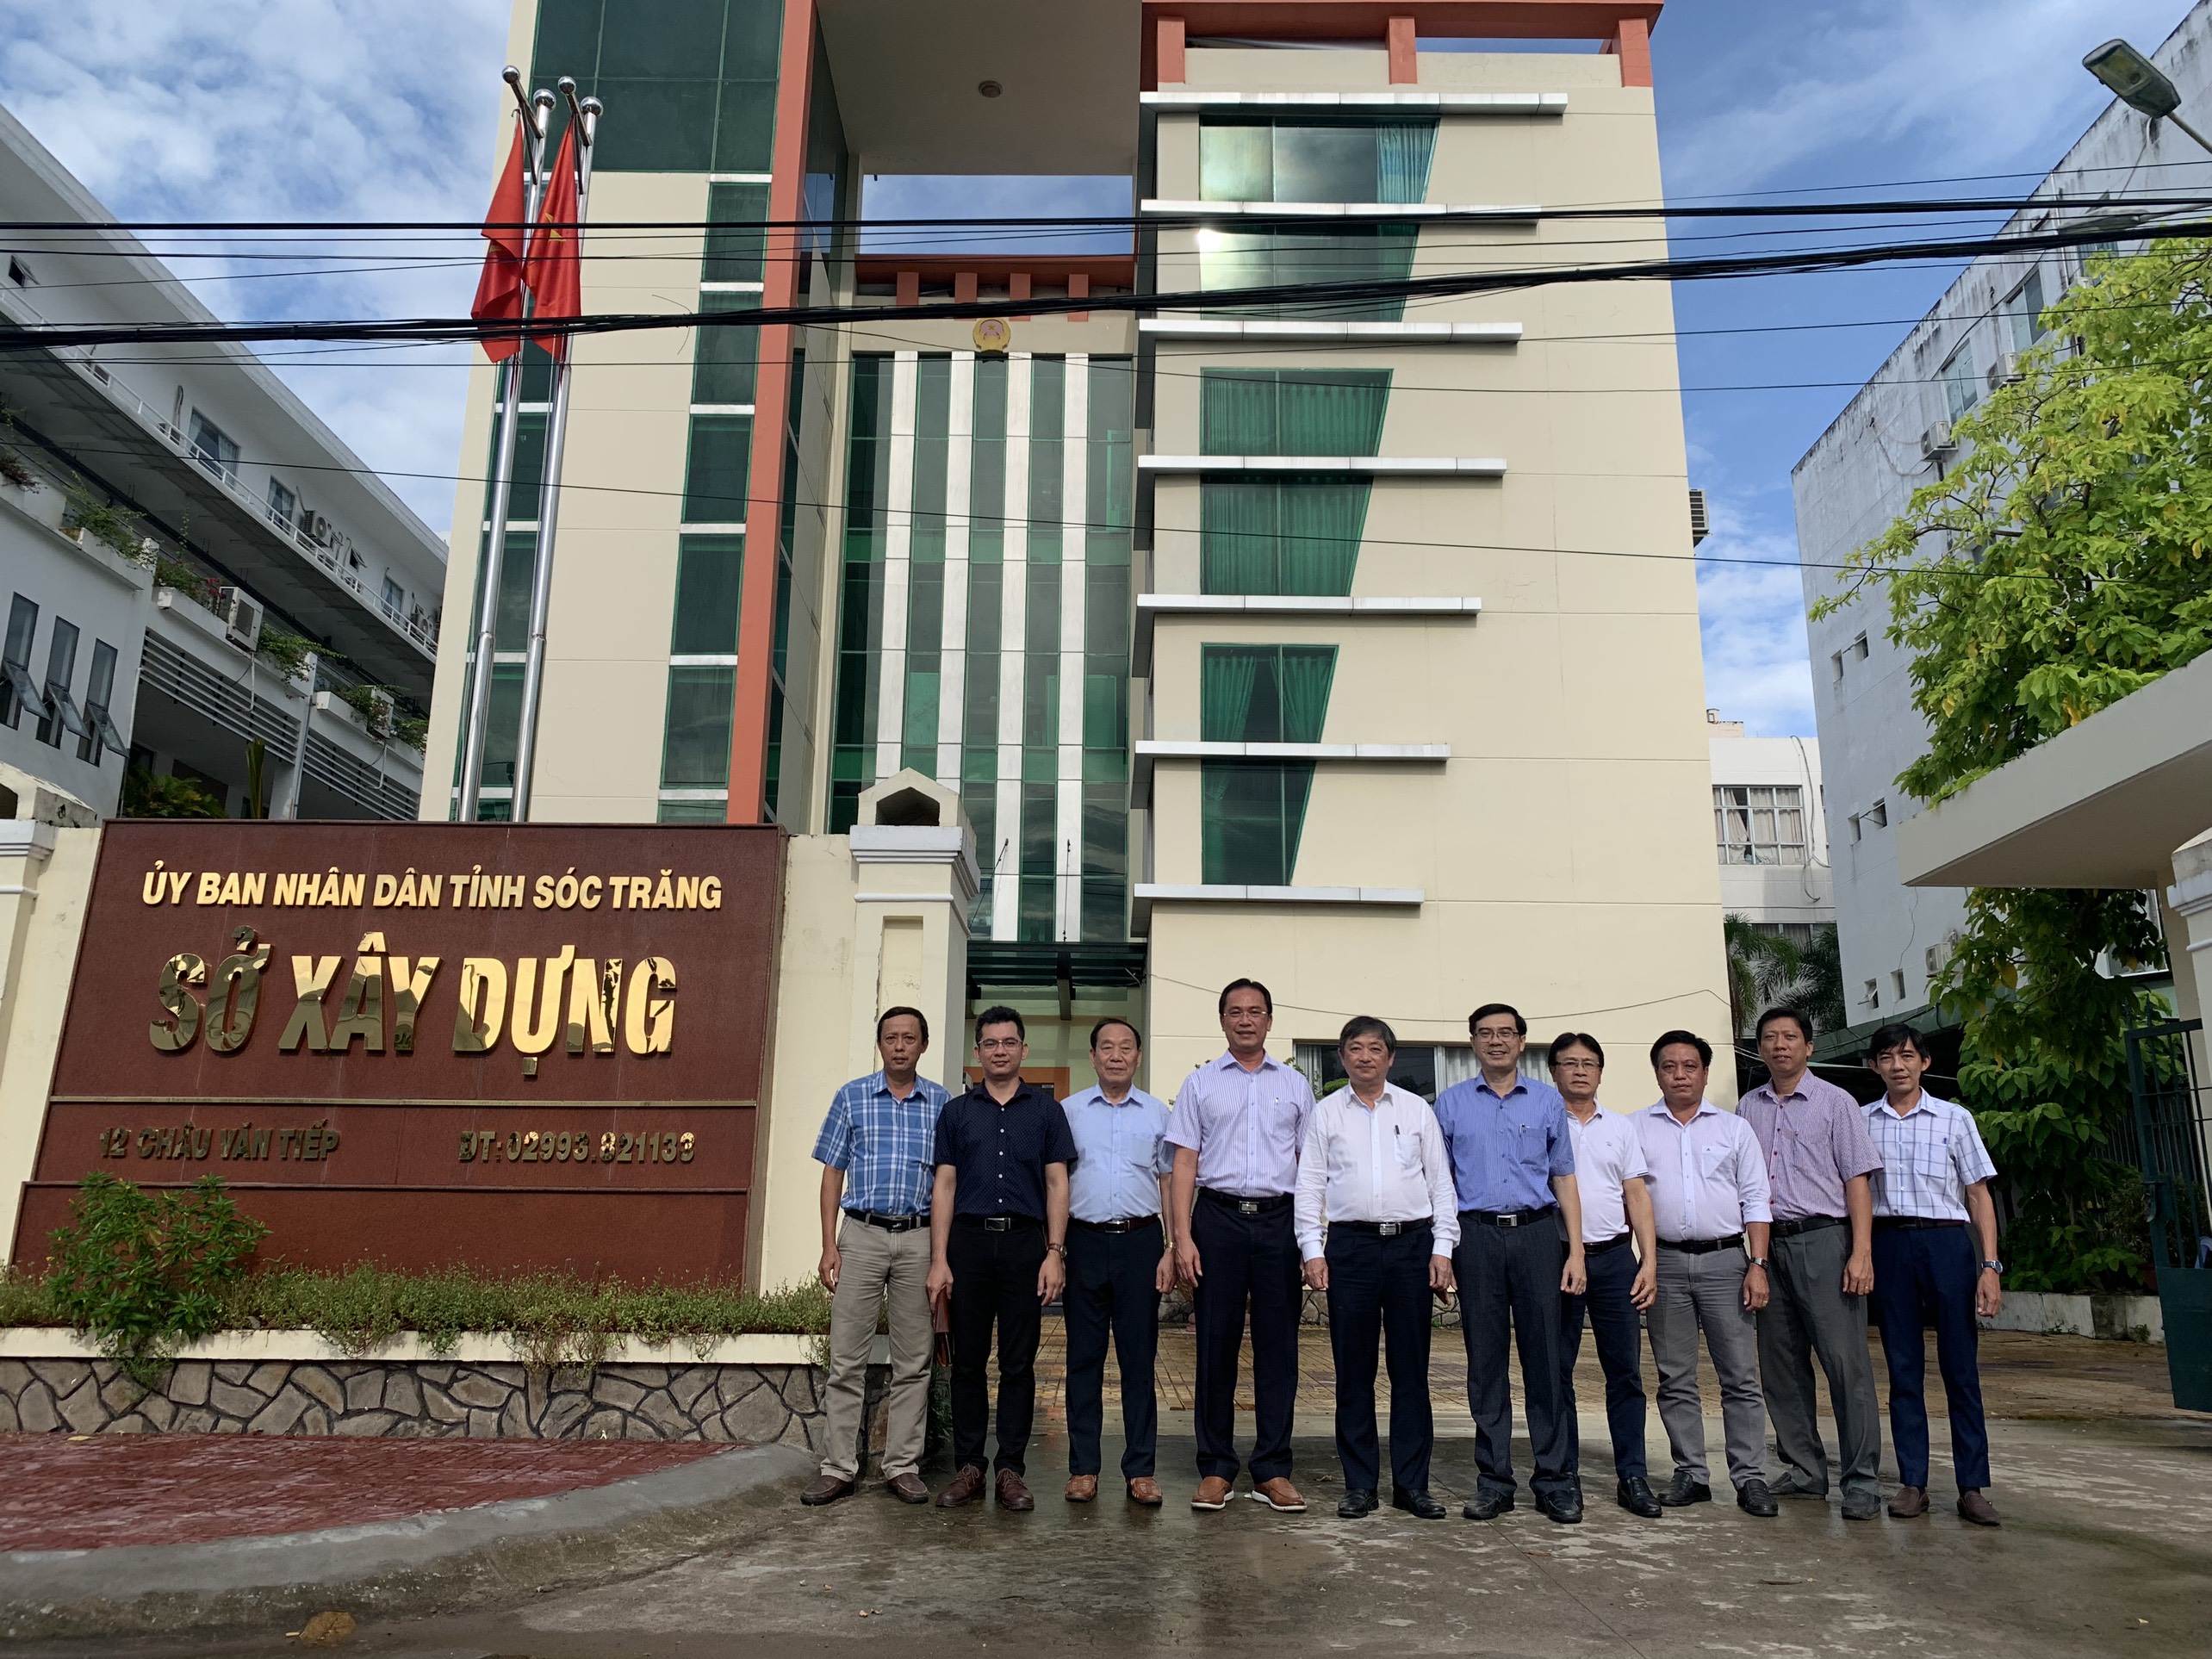  Đoàn Công tác Tổng hội Xây dựng Việt Nam làm việc với Hội Xây dựng tỉnh Sóc Trăng